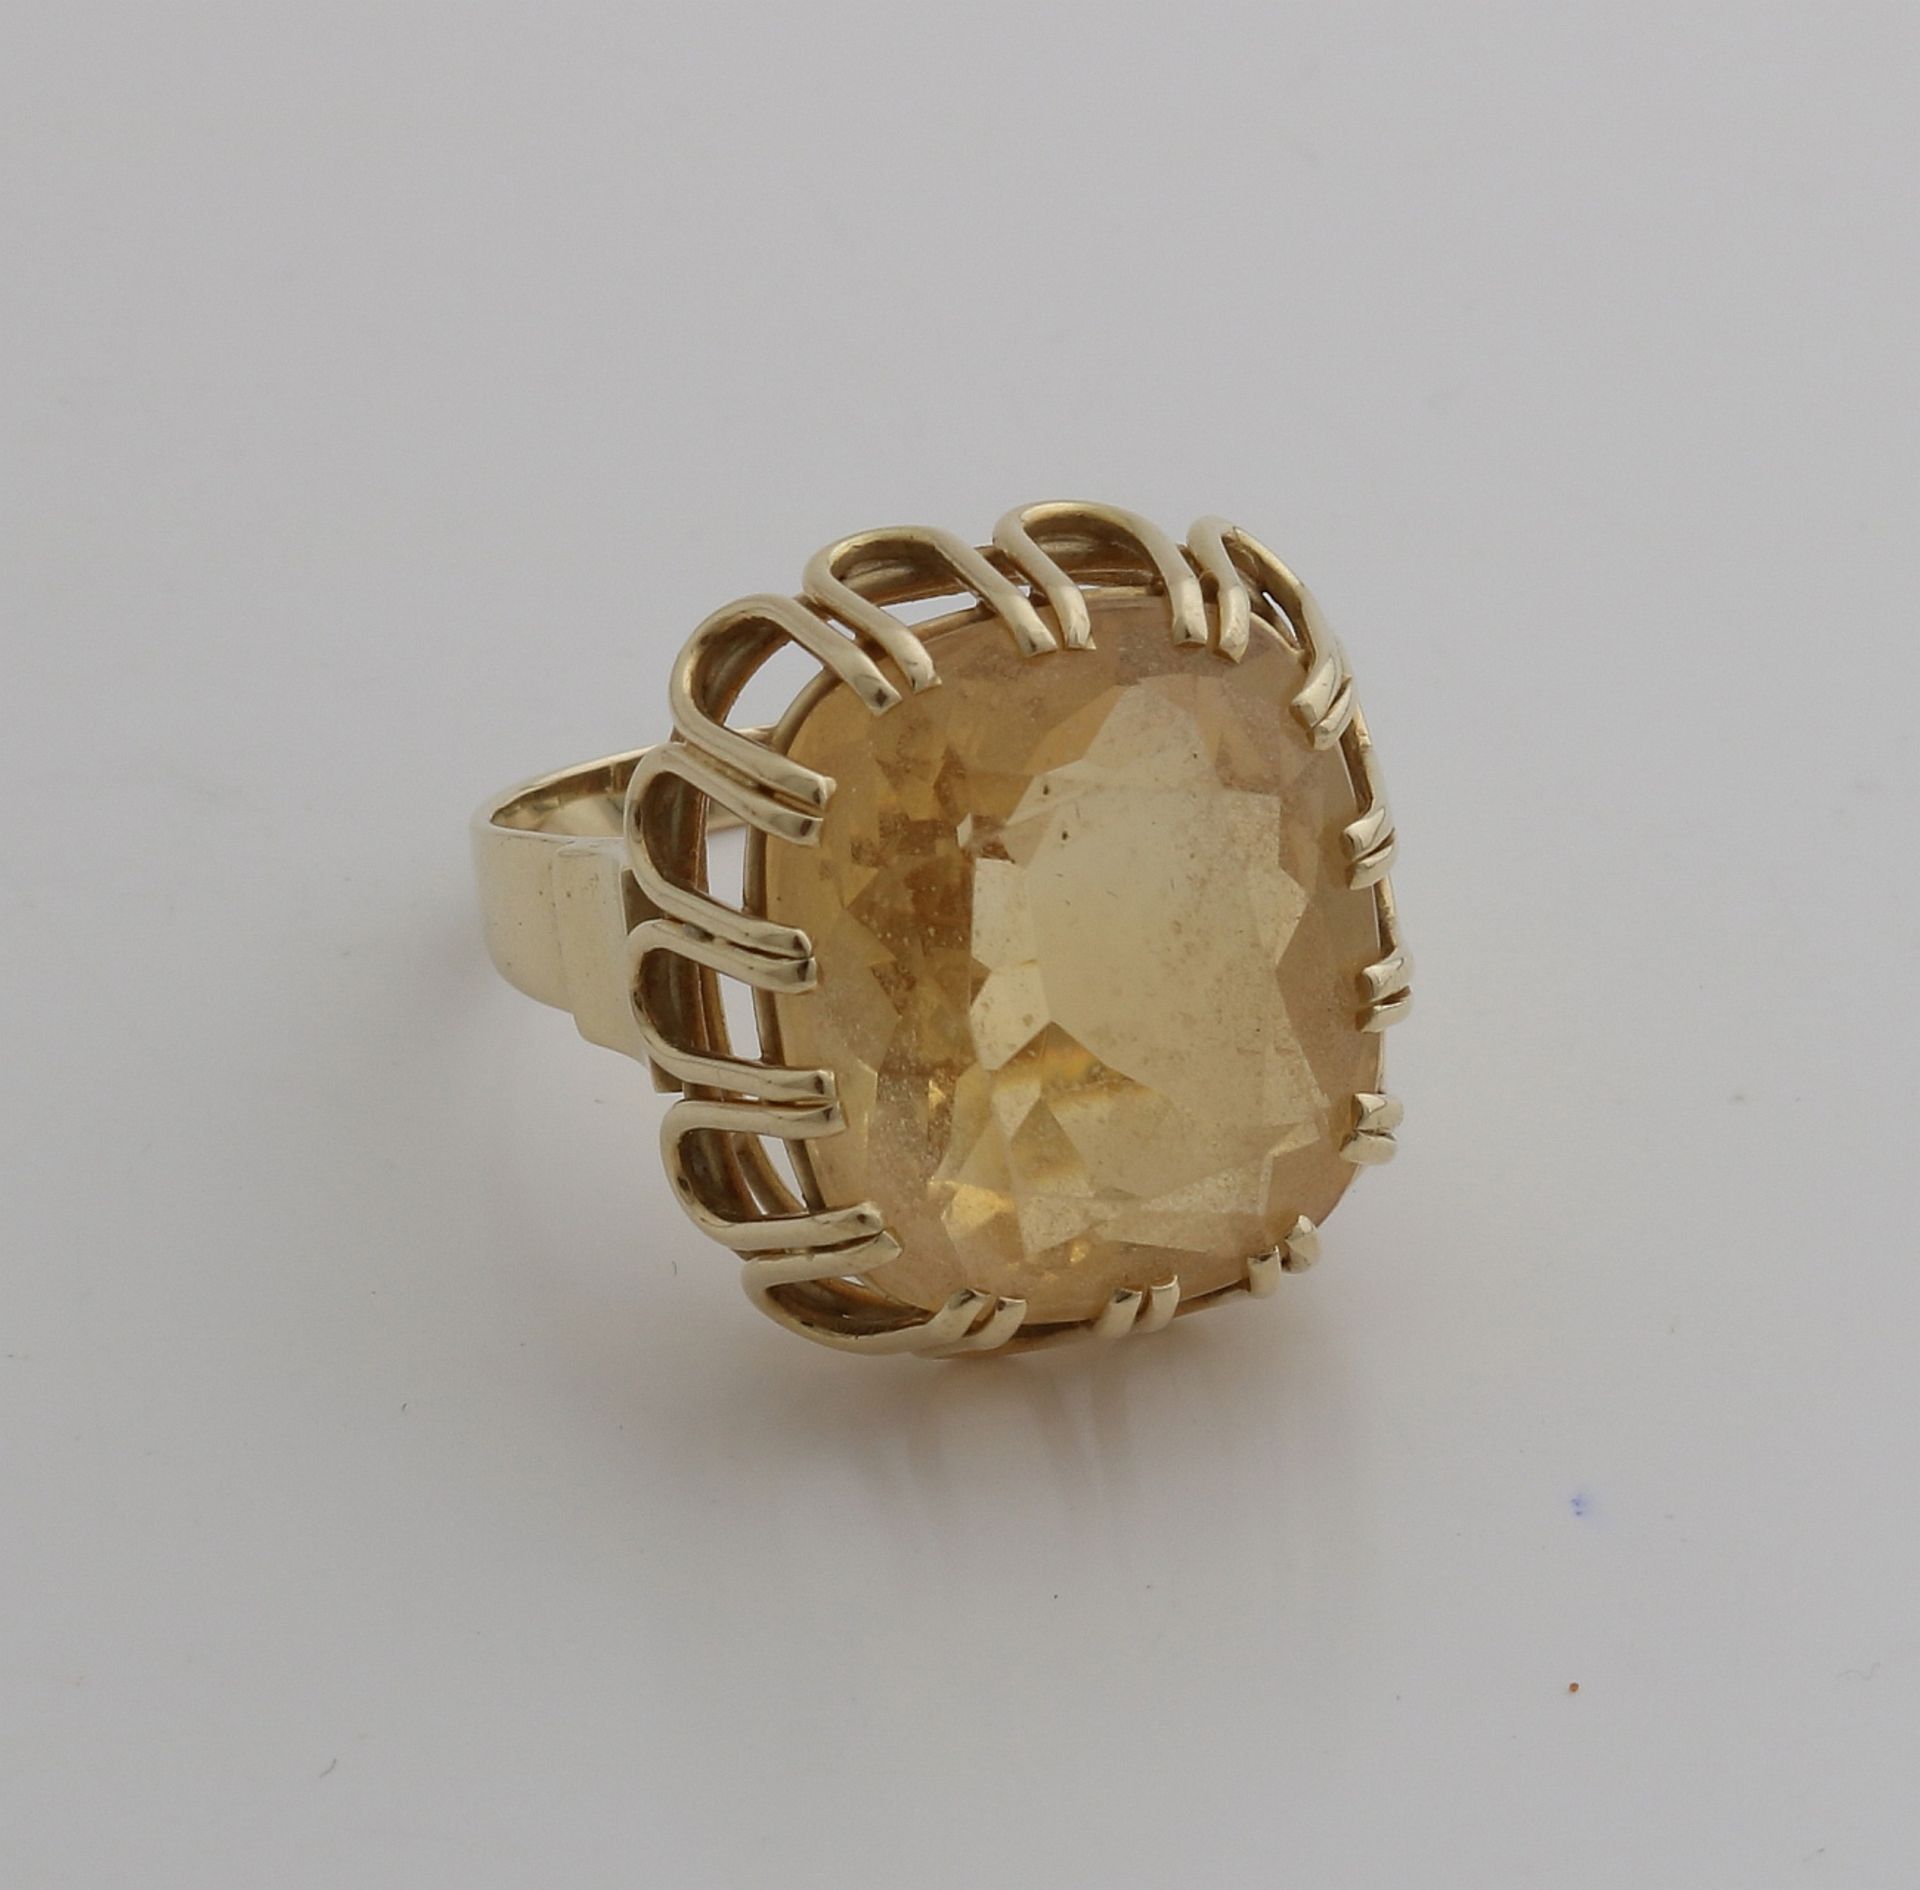 Großer Gelbgoldring, 585/000, mit Citrin. Ring mit durchbrochener rechteckiger Lünette mit einem